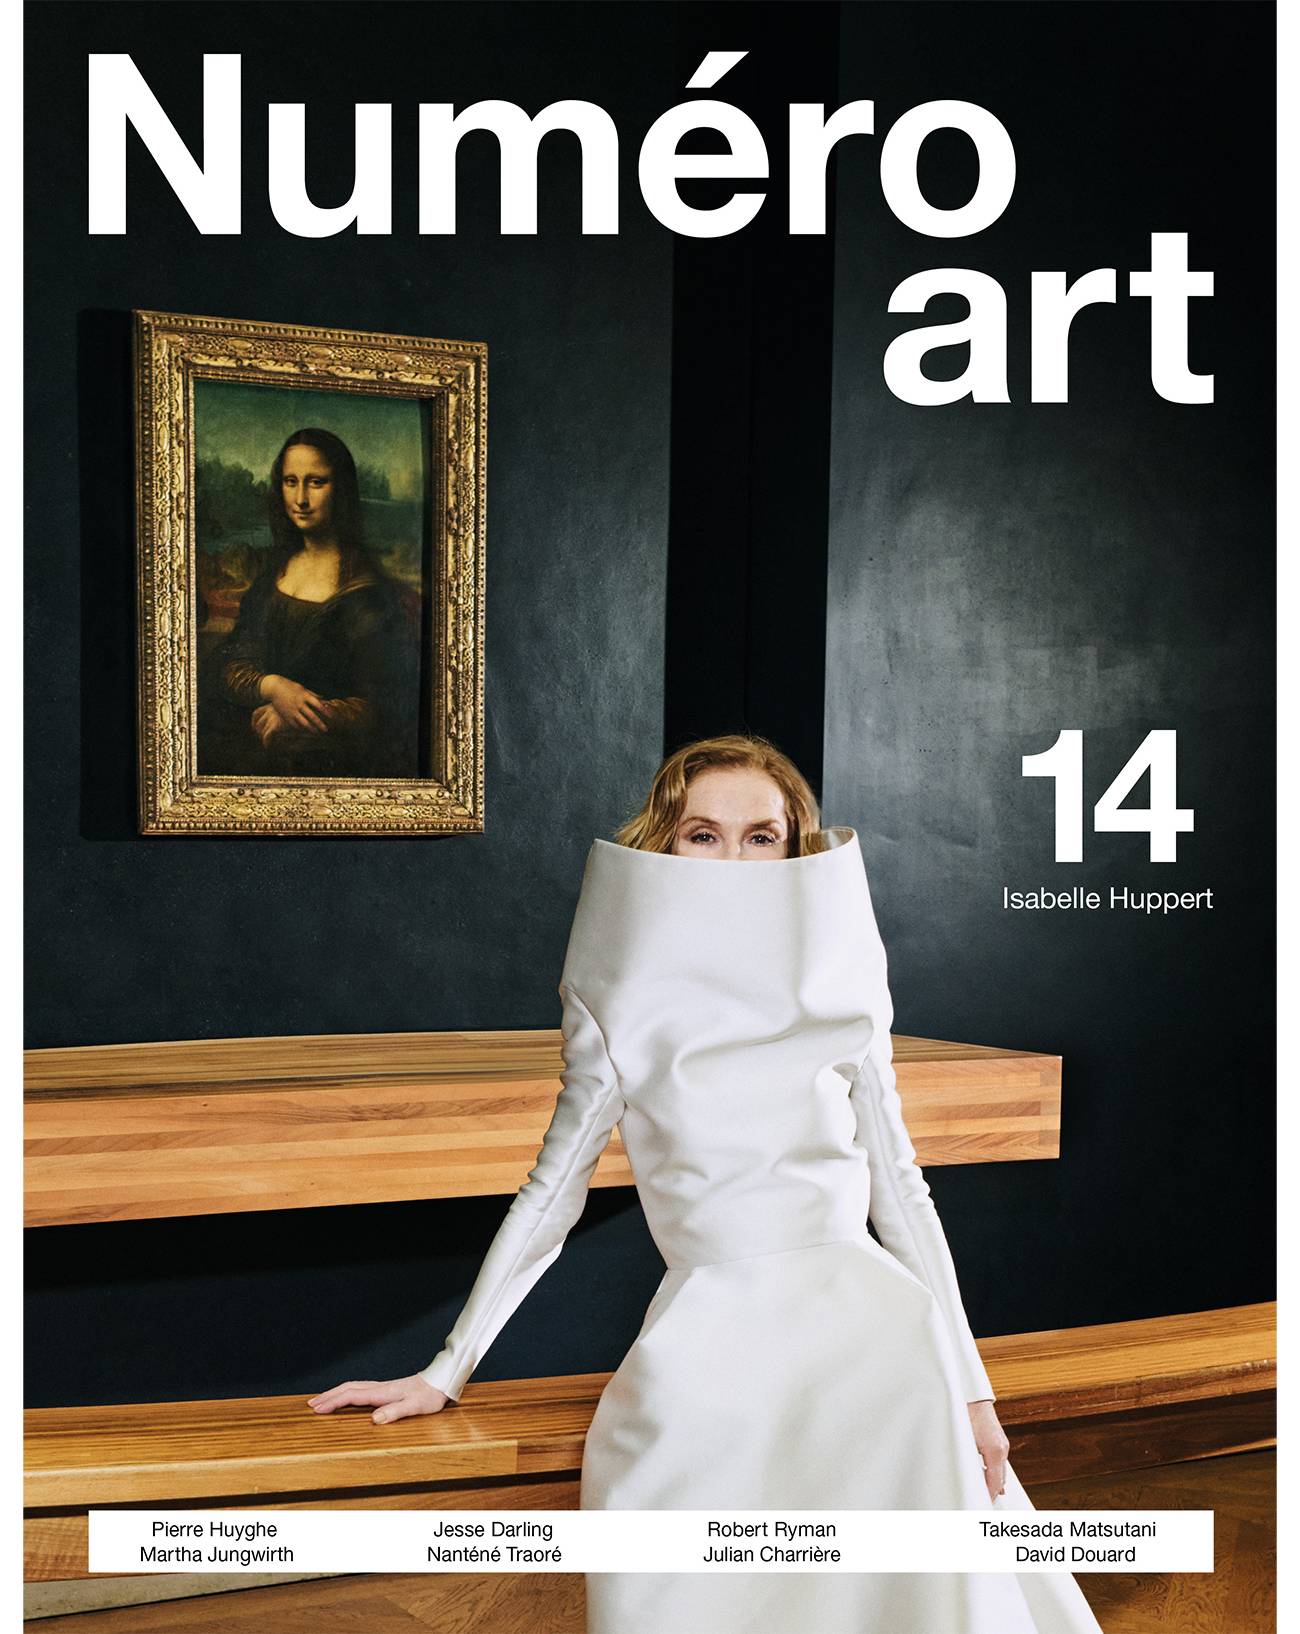 Isabelle Huppert en couverture de Numéro art face à la Joconde et aux chefs-d'œuvre du Louvre